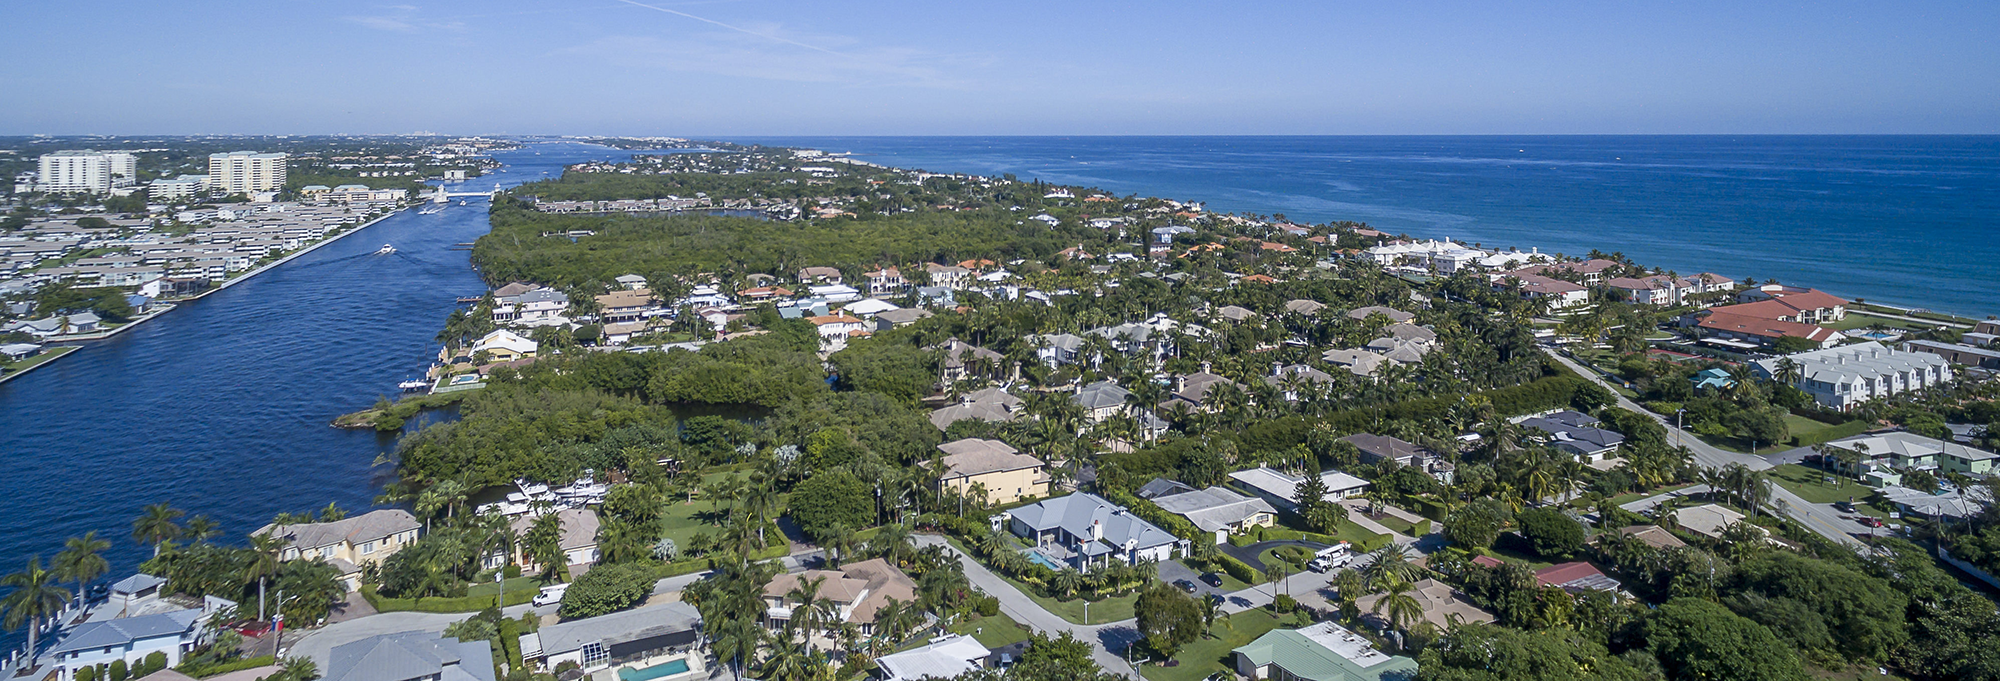 Most expensive neighborhoods in Delray Beach, FL